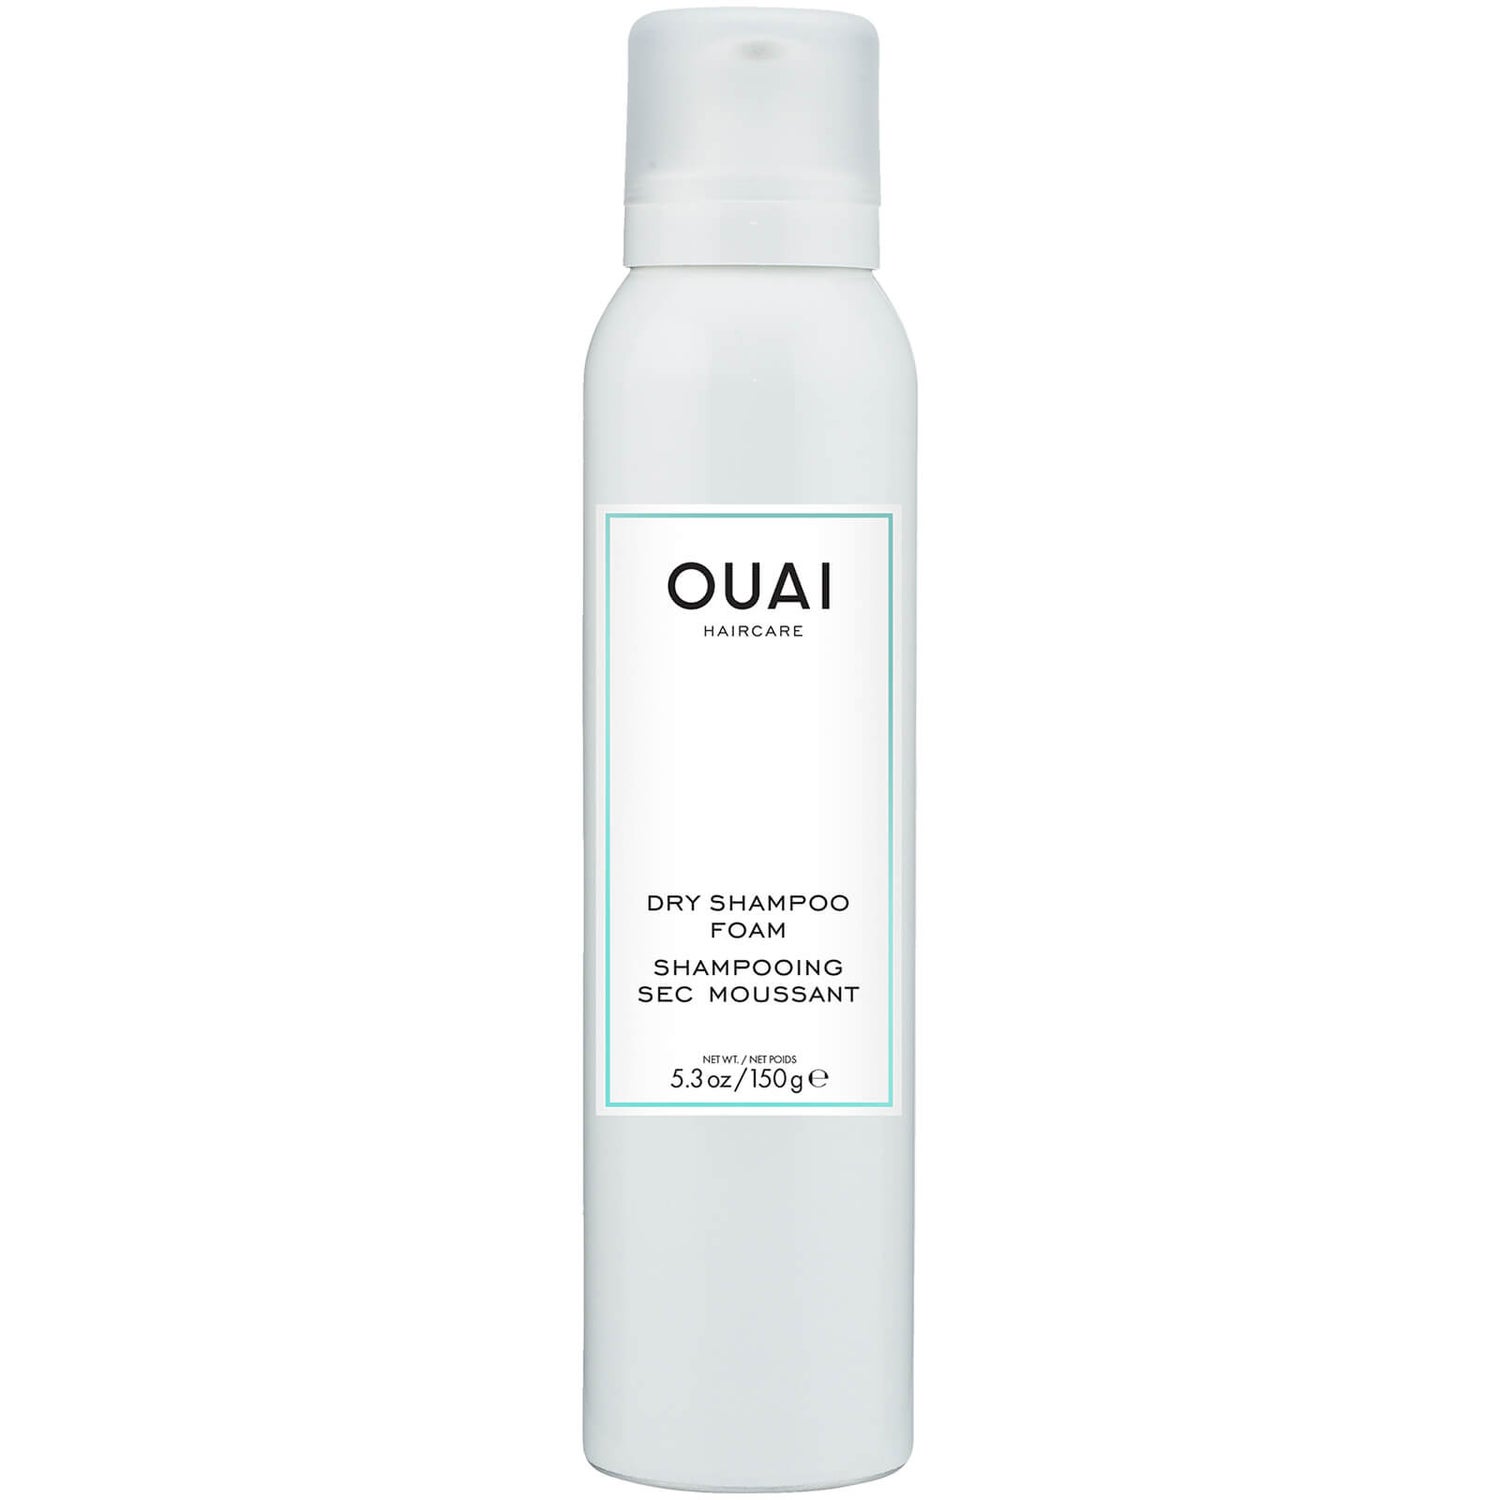 OUAI Dry Shampoo Foam 150g